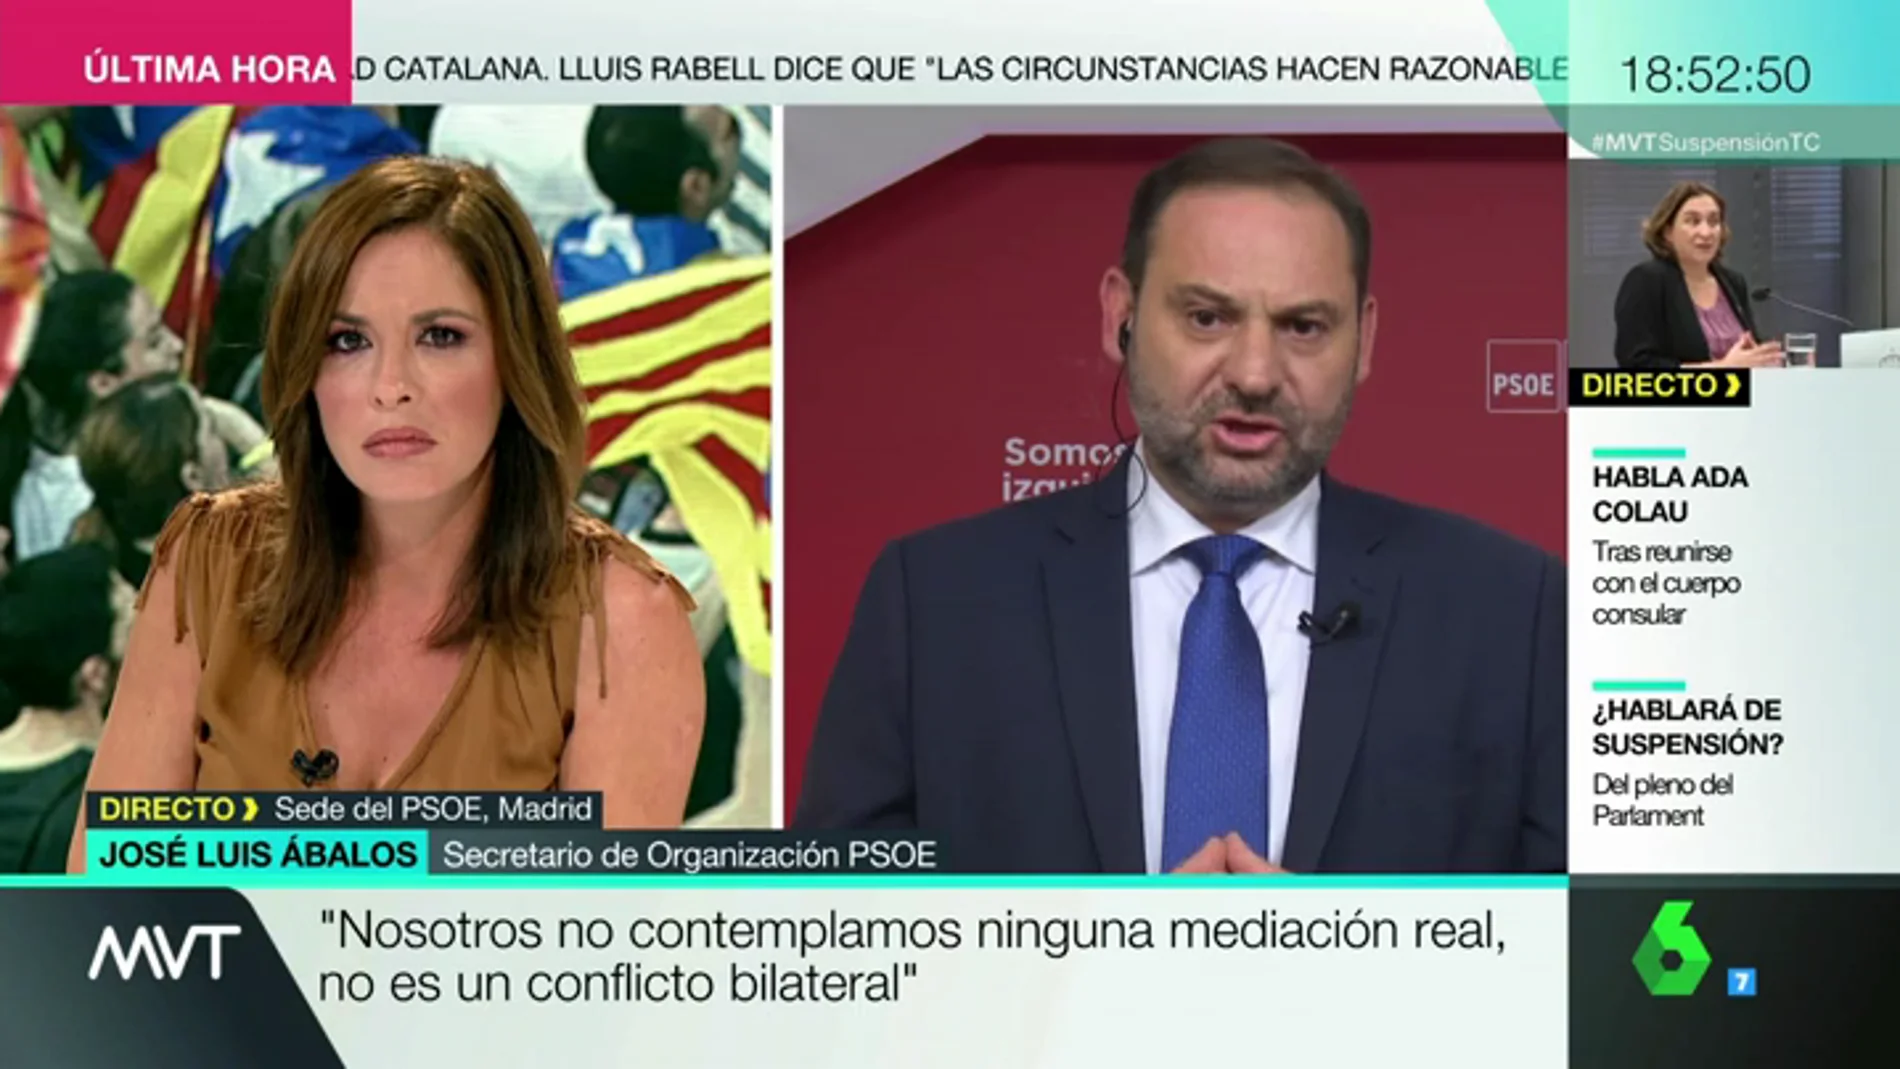 José Luis Ábalos: "Nosotros no contemplamos ninguna mediación real, no es un conflicto bilateral"